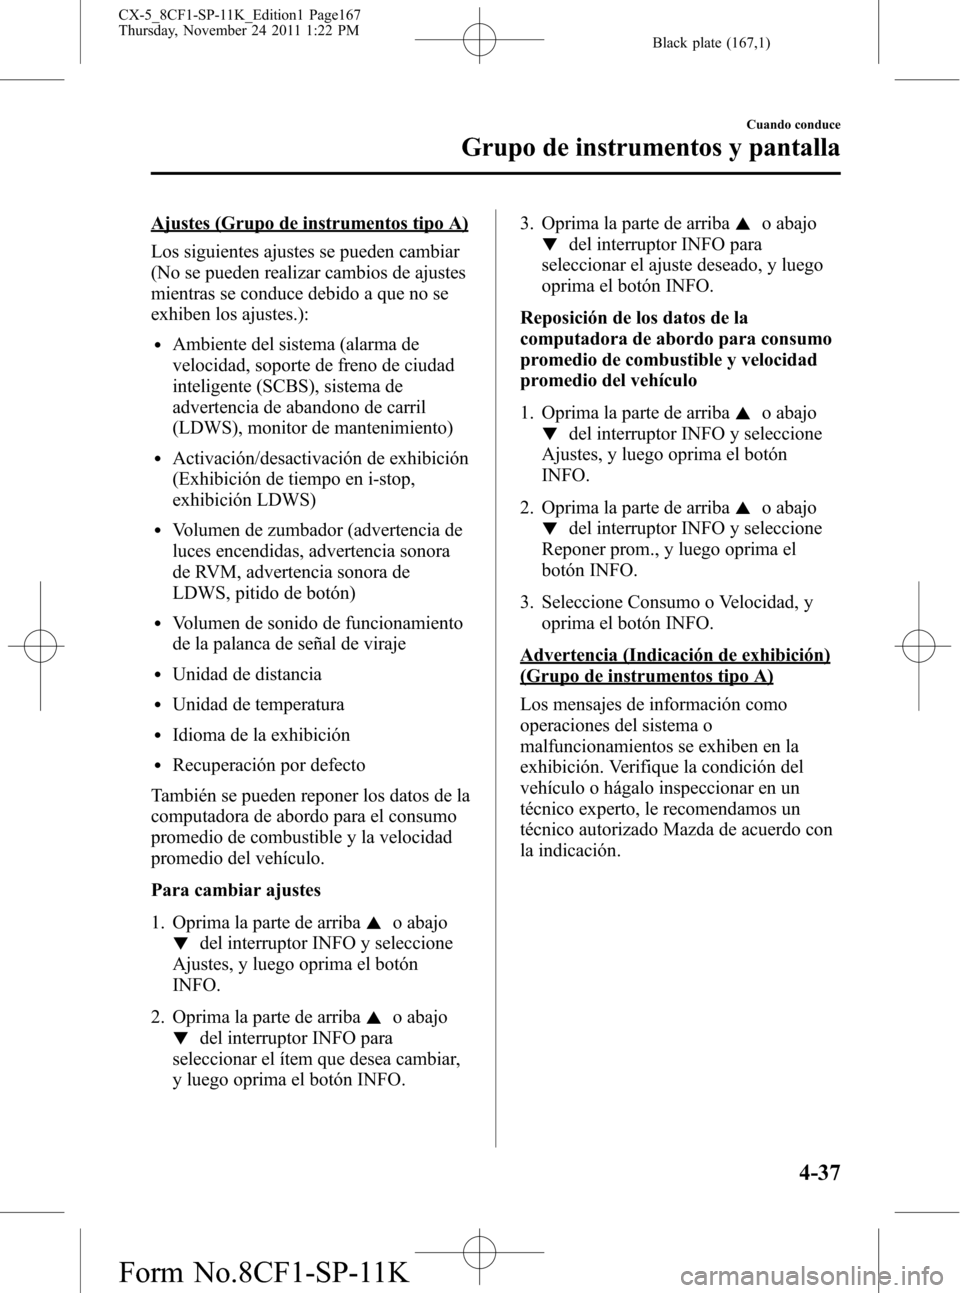 MAZDA MODEL CX-5 2012  Manual del propietario (in Spanish)  Black plate (167,1)
Ajustes (Grupo de instrumentos tipo A)
Los siguientes ajustes se pueden cambiar
(No se pueden realizar cambios de ajustes
mientras se conduce debido a que no se
exhiben los ajustes